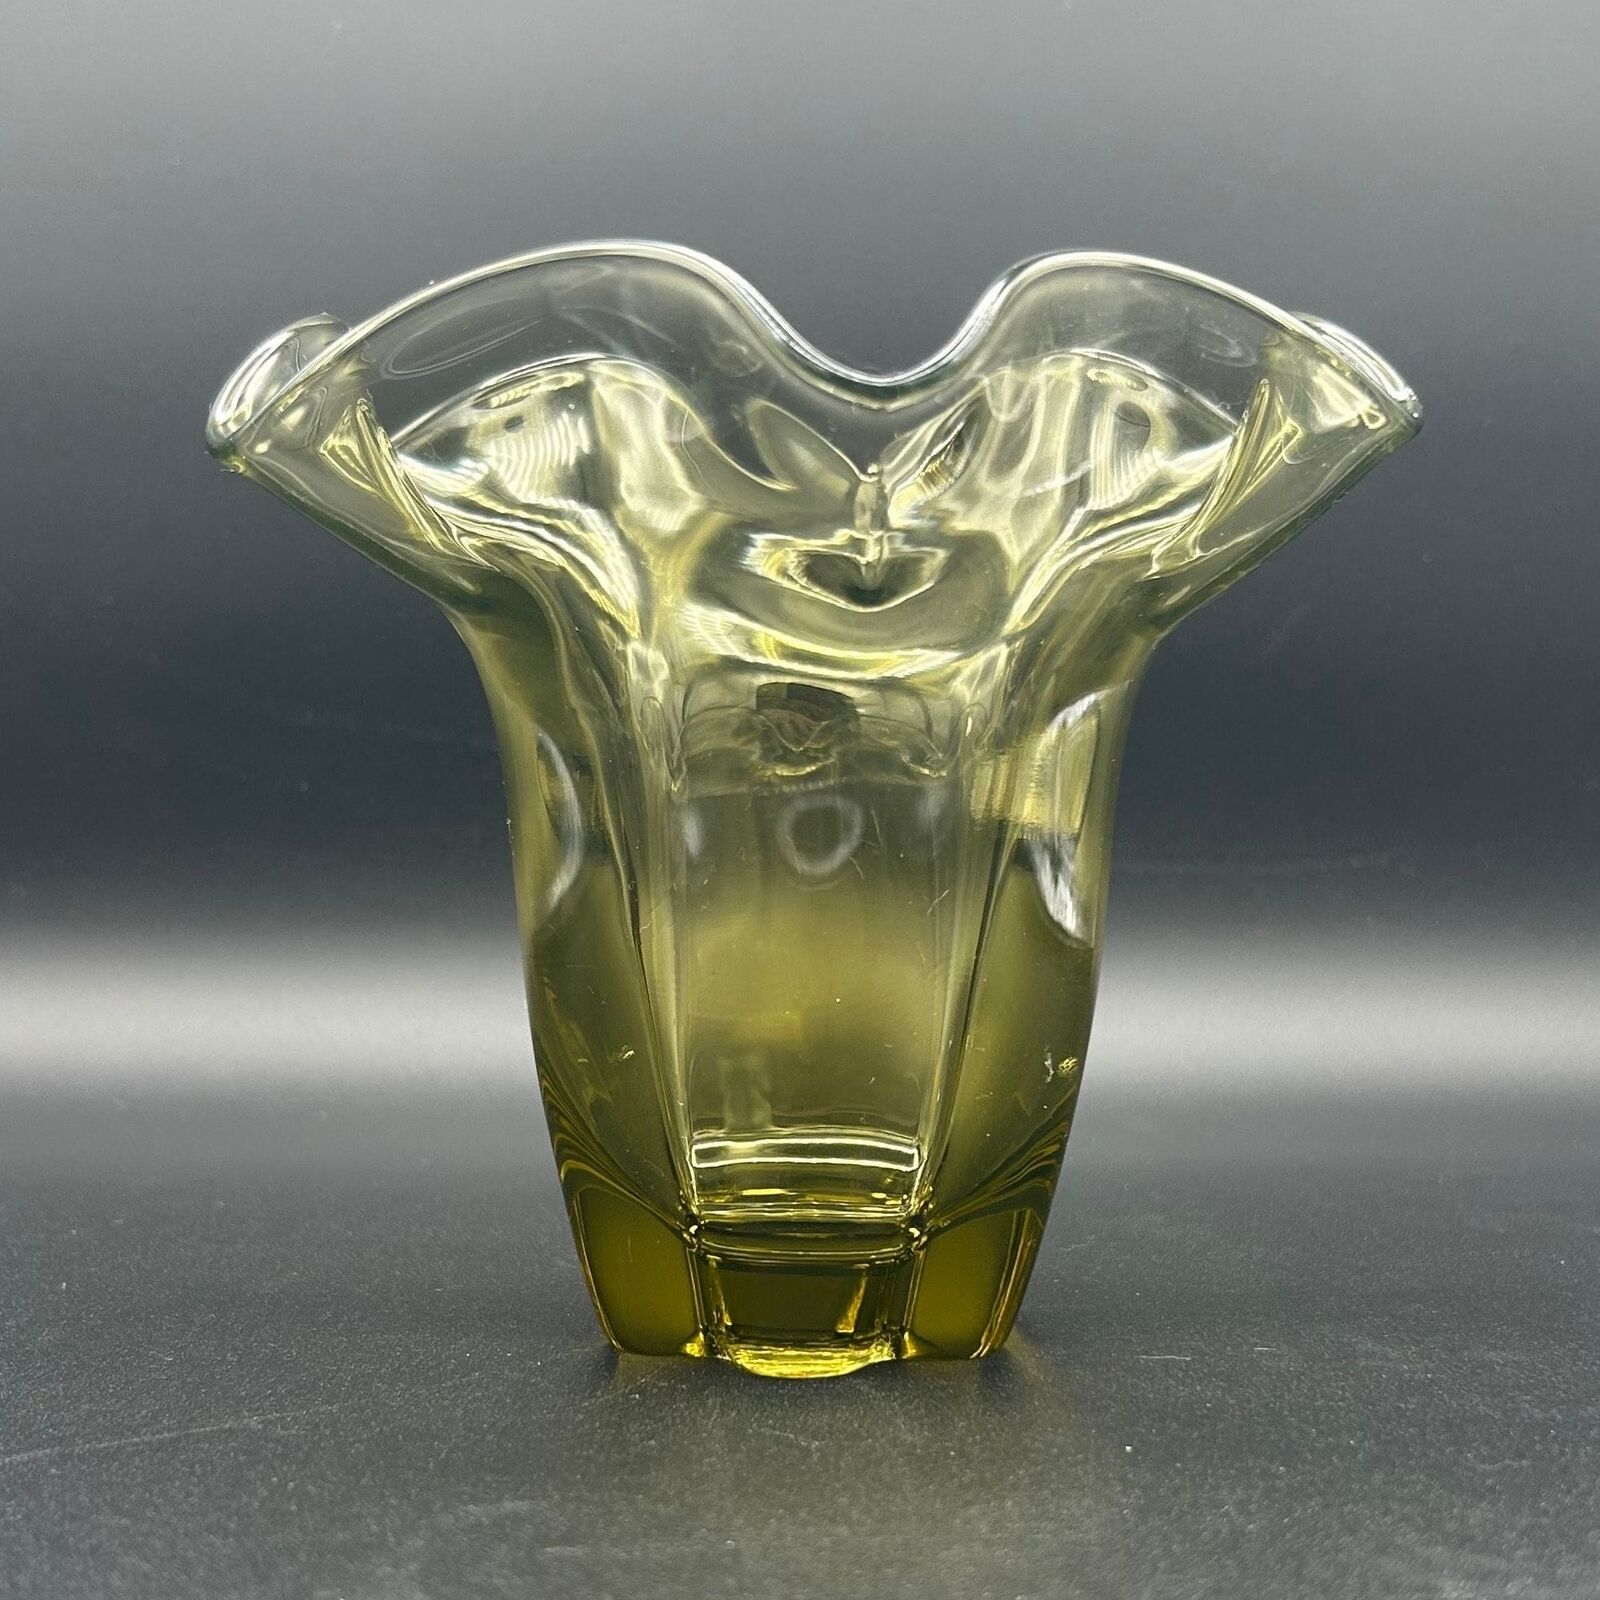 Tiffin Uranium Vase - Canterbury, rare, green, vintage, antique, vase, ruffled